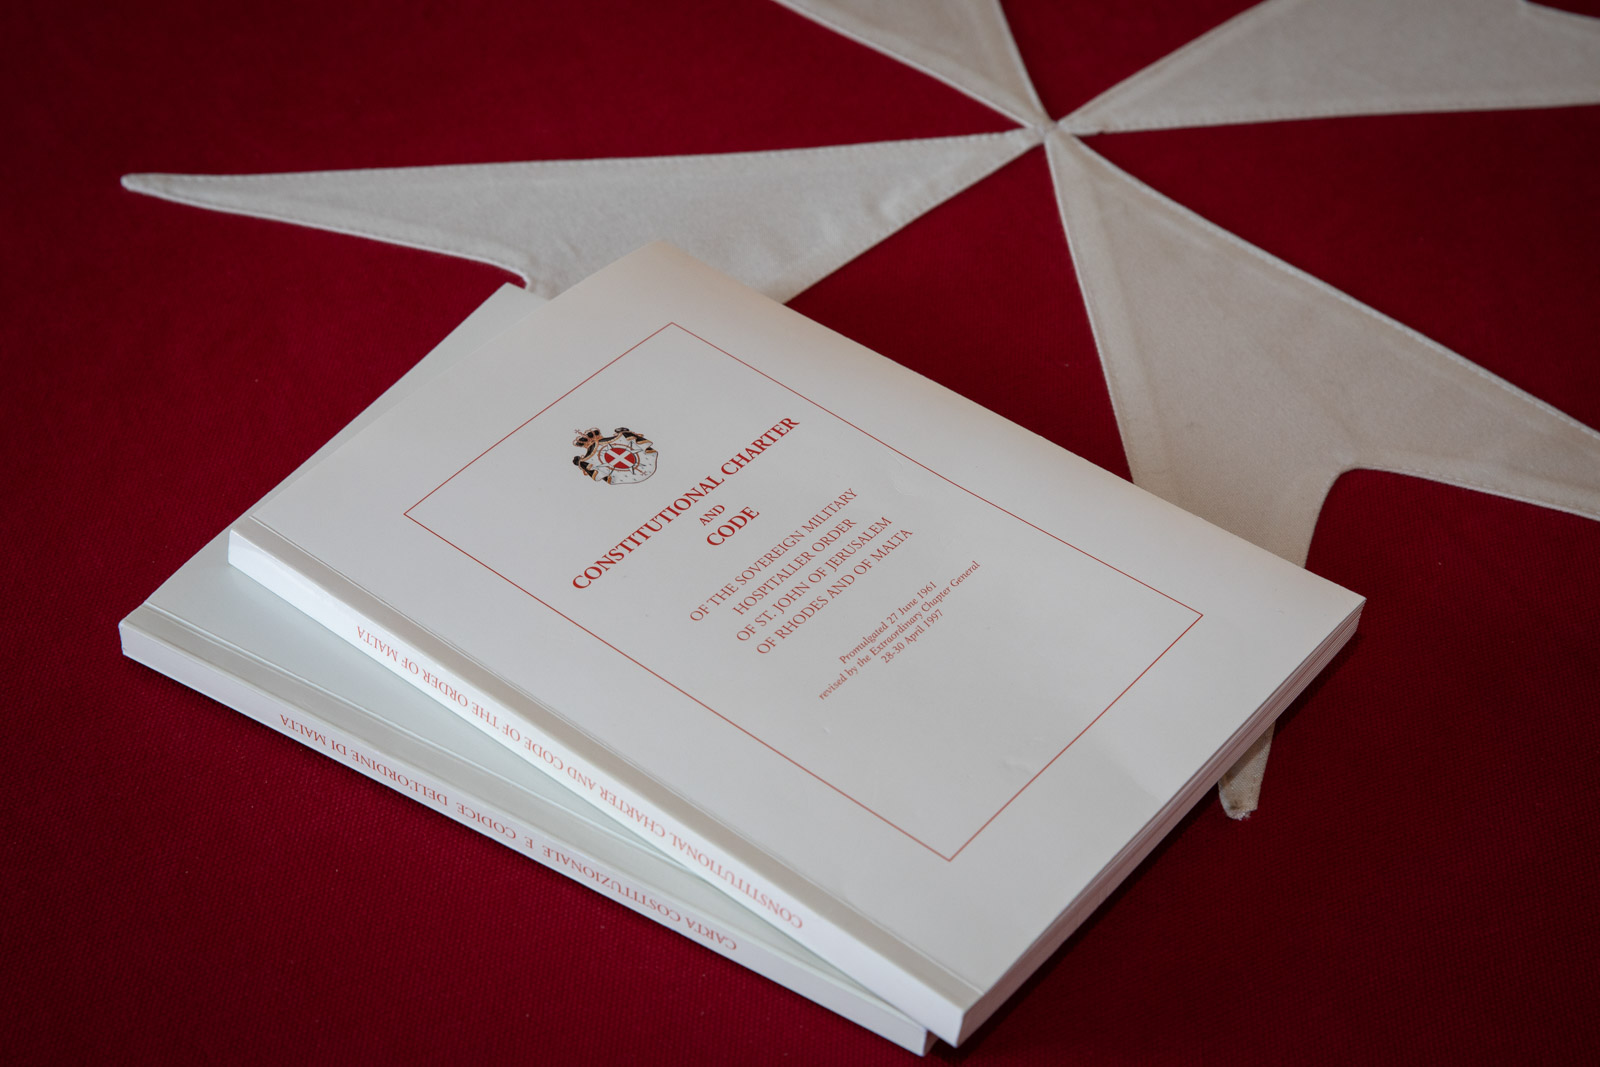 De nieuwe Grondwet voor de Orde van Malta.